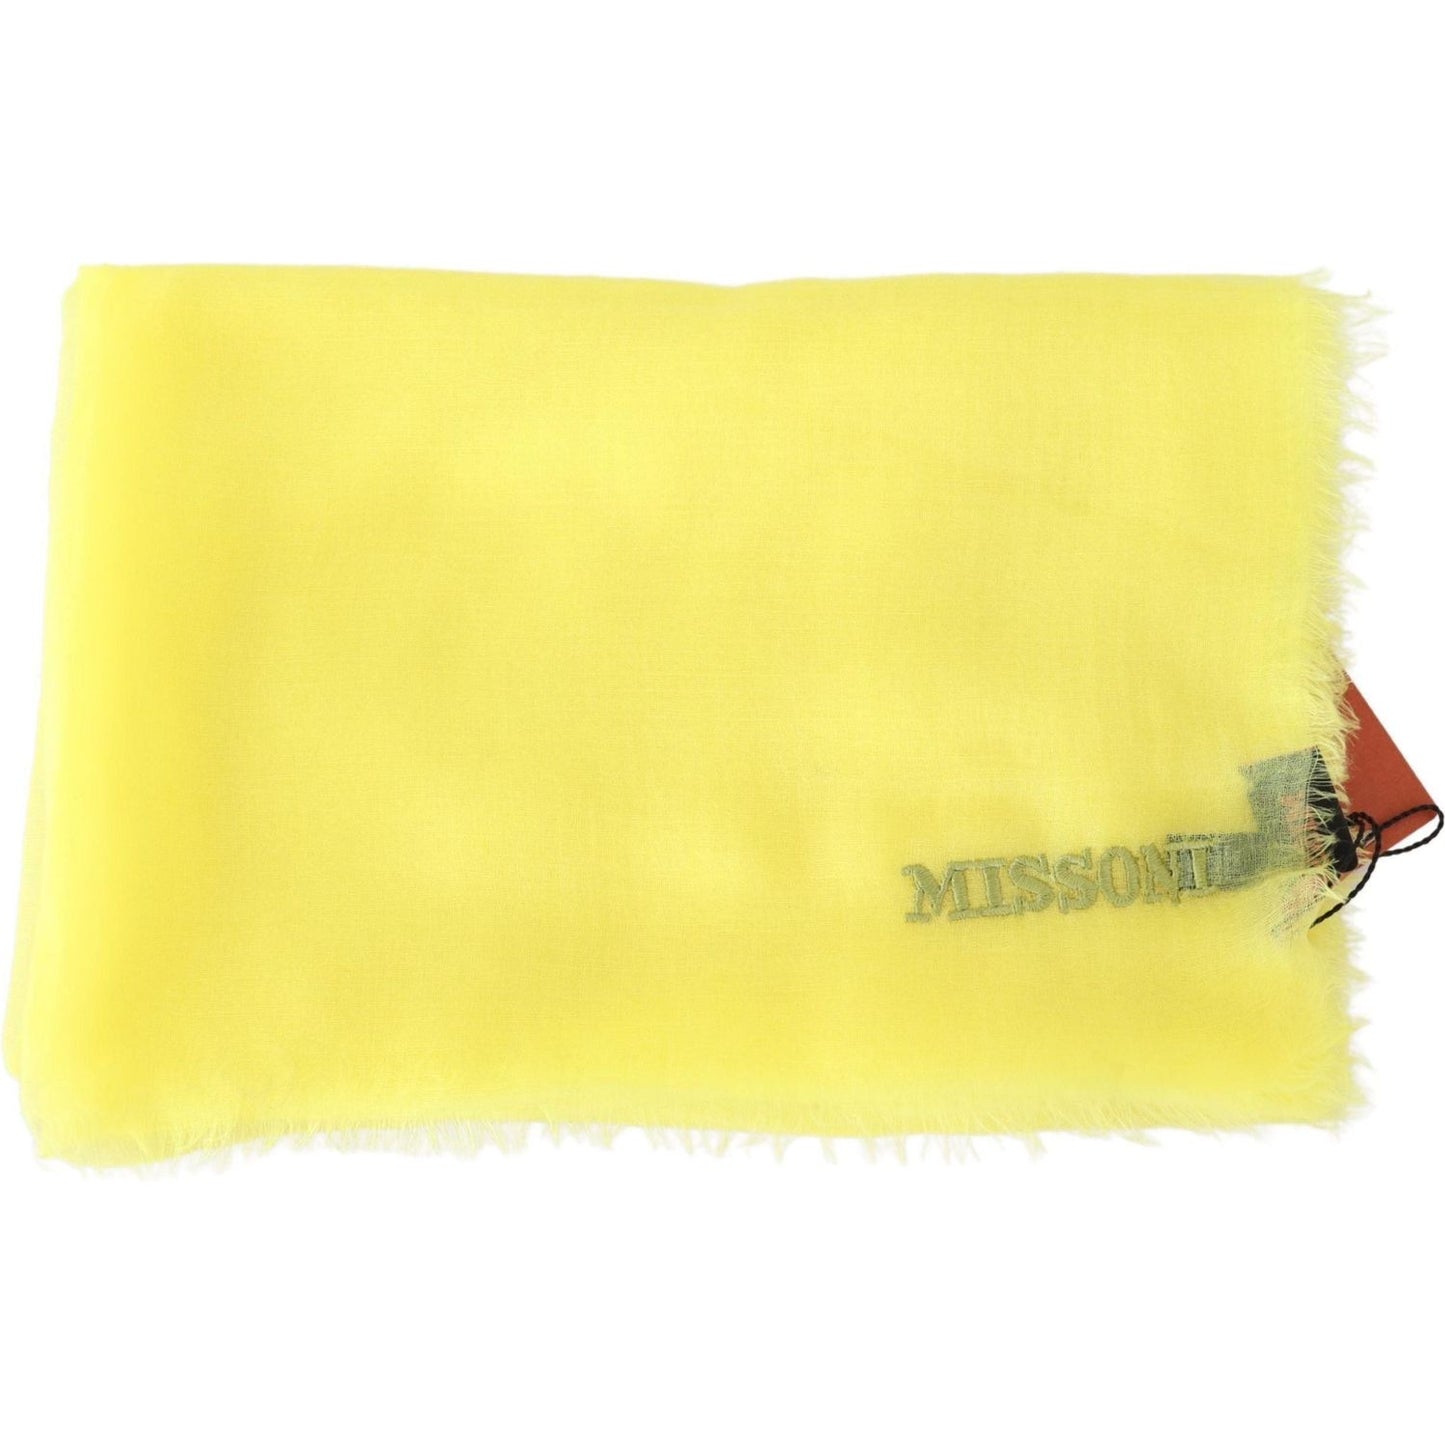 Missoni Opulent Cashmere Unisex Scarf In Vibrant Yellow yellow-cashmere-mesh-unisex-scarf